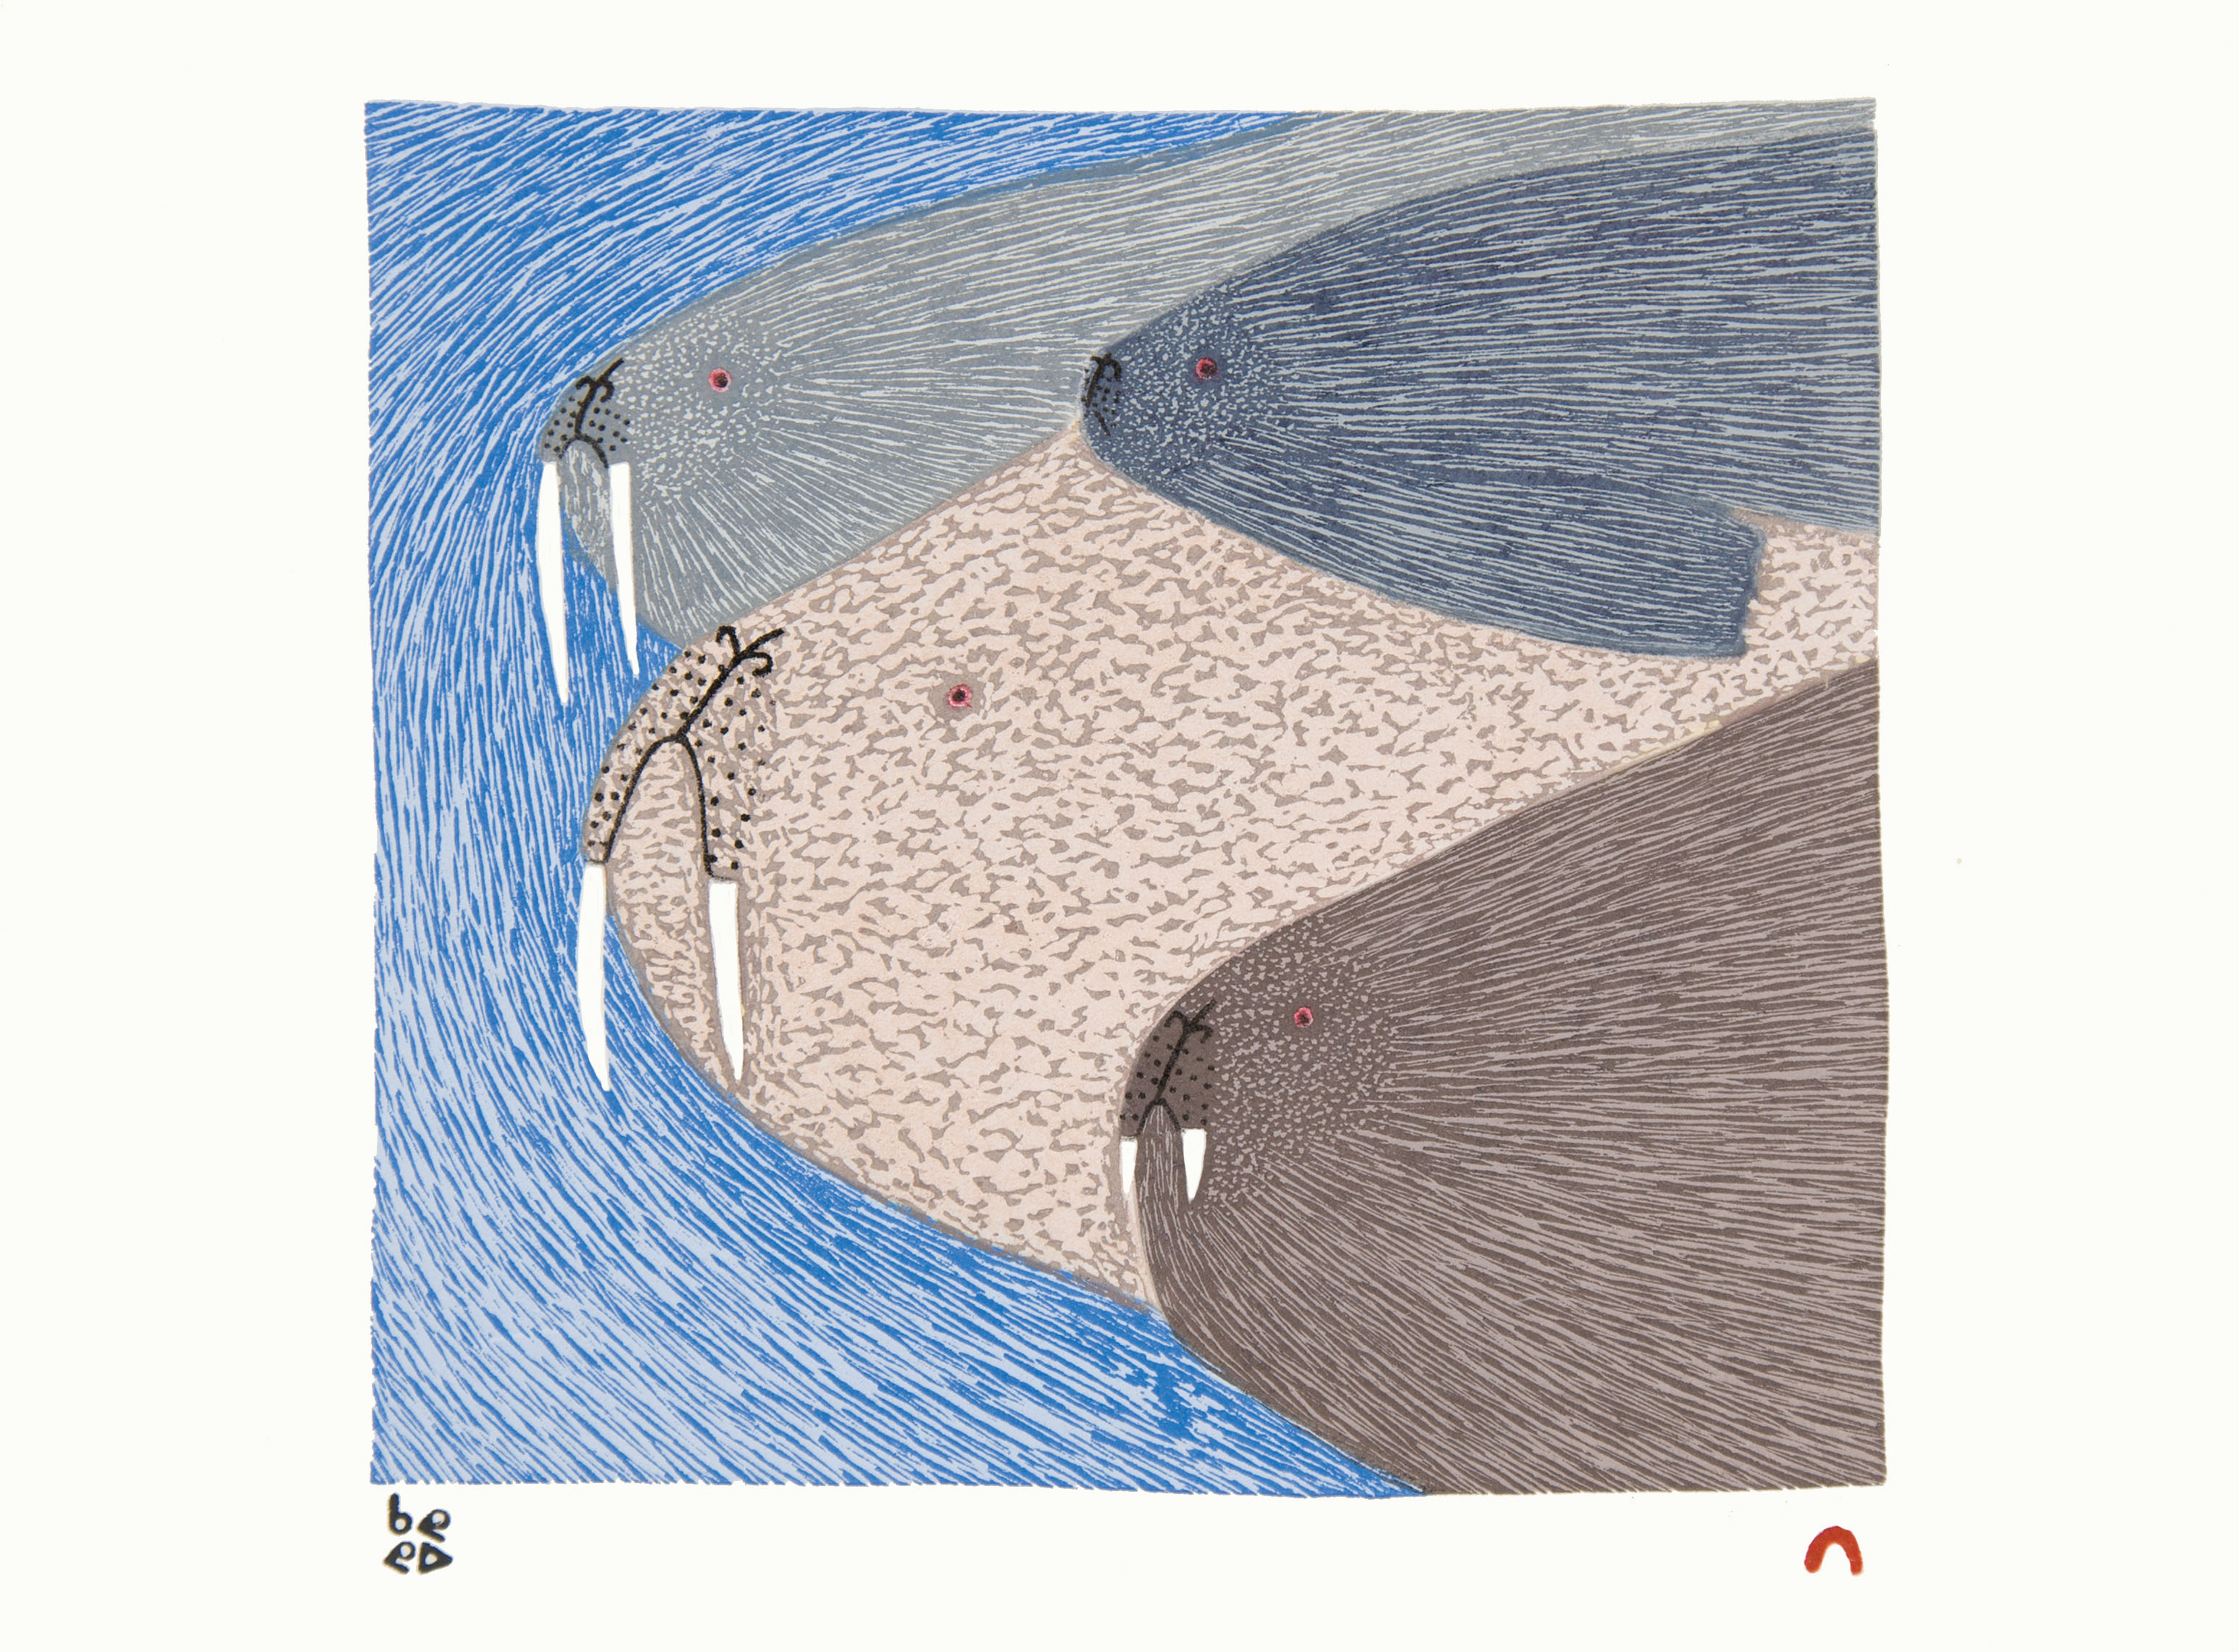 NINGIUKULU TEEVEE Swimming Walrus Stonecut & Stencil Printer: Qavavau Manumie 27.5 x 37.7 cm; 10 3/4 x 14 3/4 in. $400 US